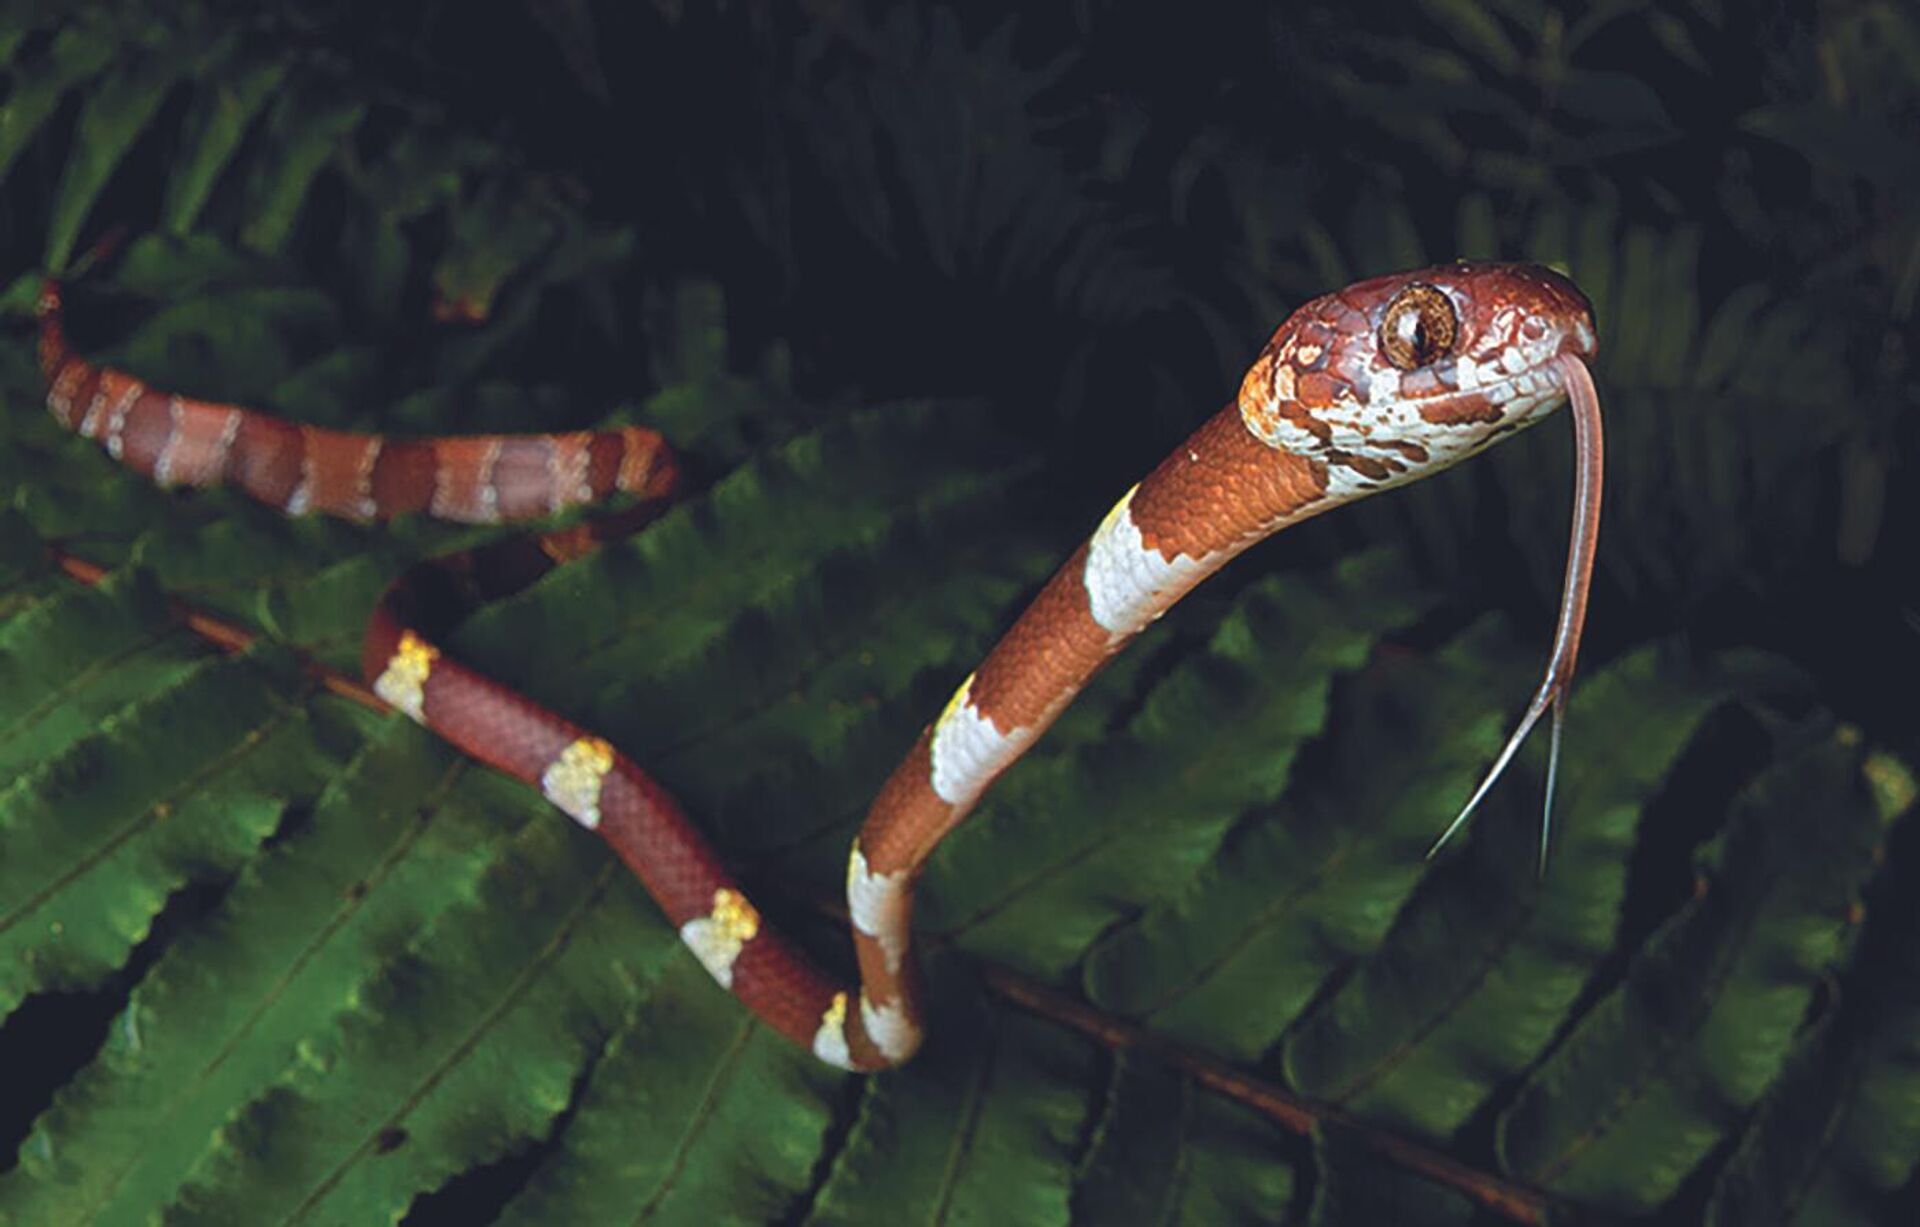 Novas espécies incomuns de serpente são encontradas em área ameaçada do Panamá - Sputnik Brasil, 1920, 05.02.2023